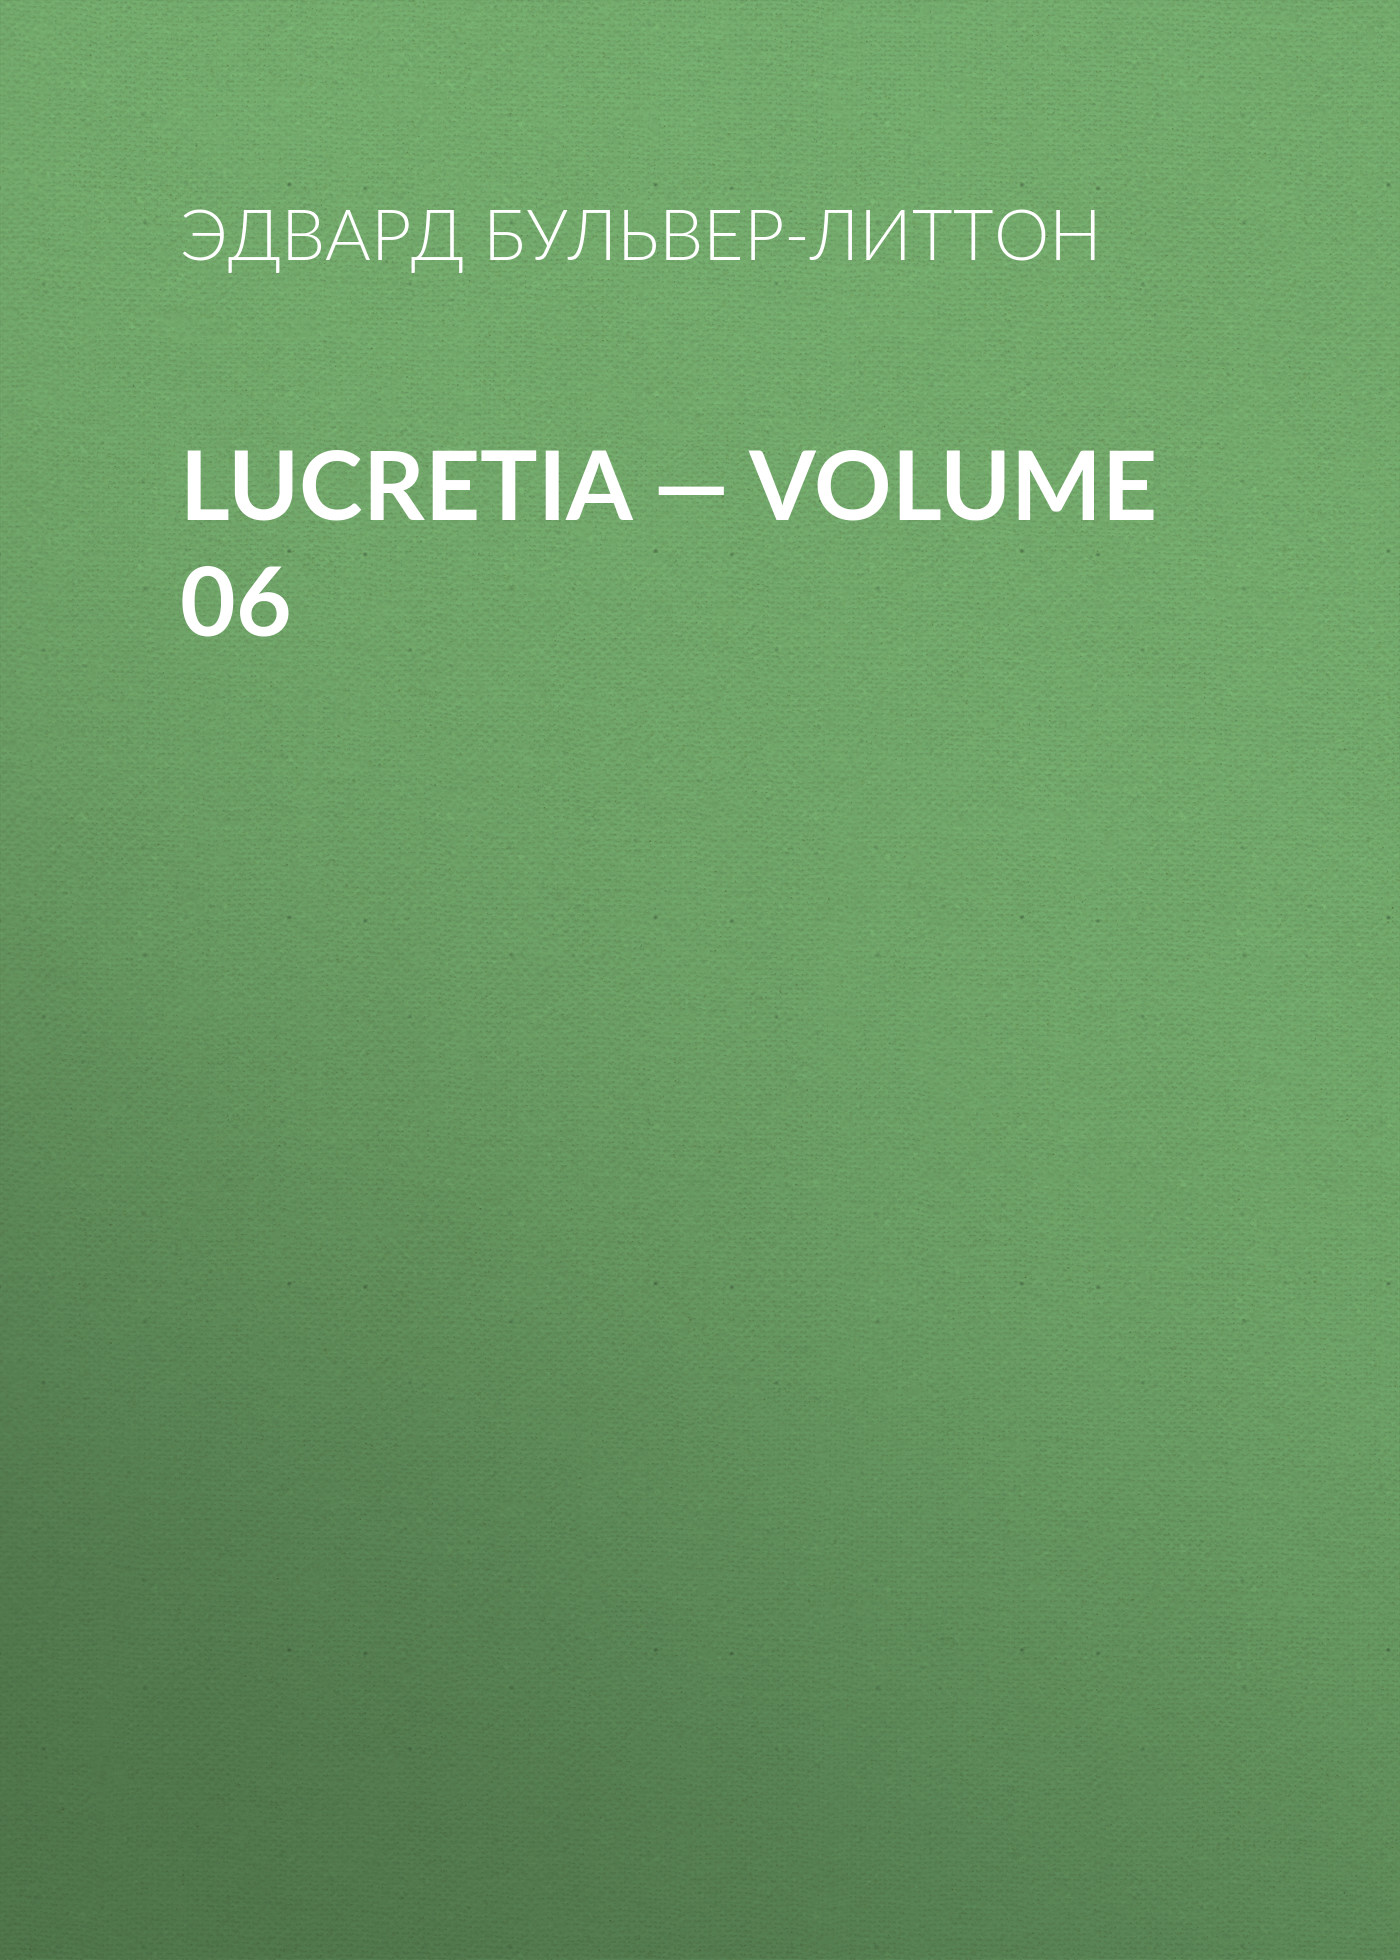 Книга Lucretia – Volume 06 из серии , созданная Эдвард Бульвер-Литтон, может относится к жанру Литература 19 века, Зарубежные детективы. Стоимость электронной книги Lucretia – Volume 06 с идентификатором 35009065 составляет 0 руб.